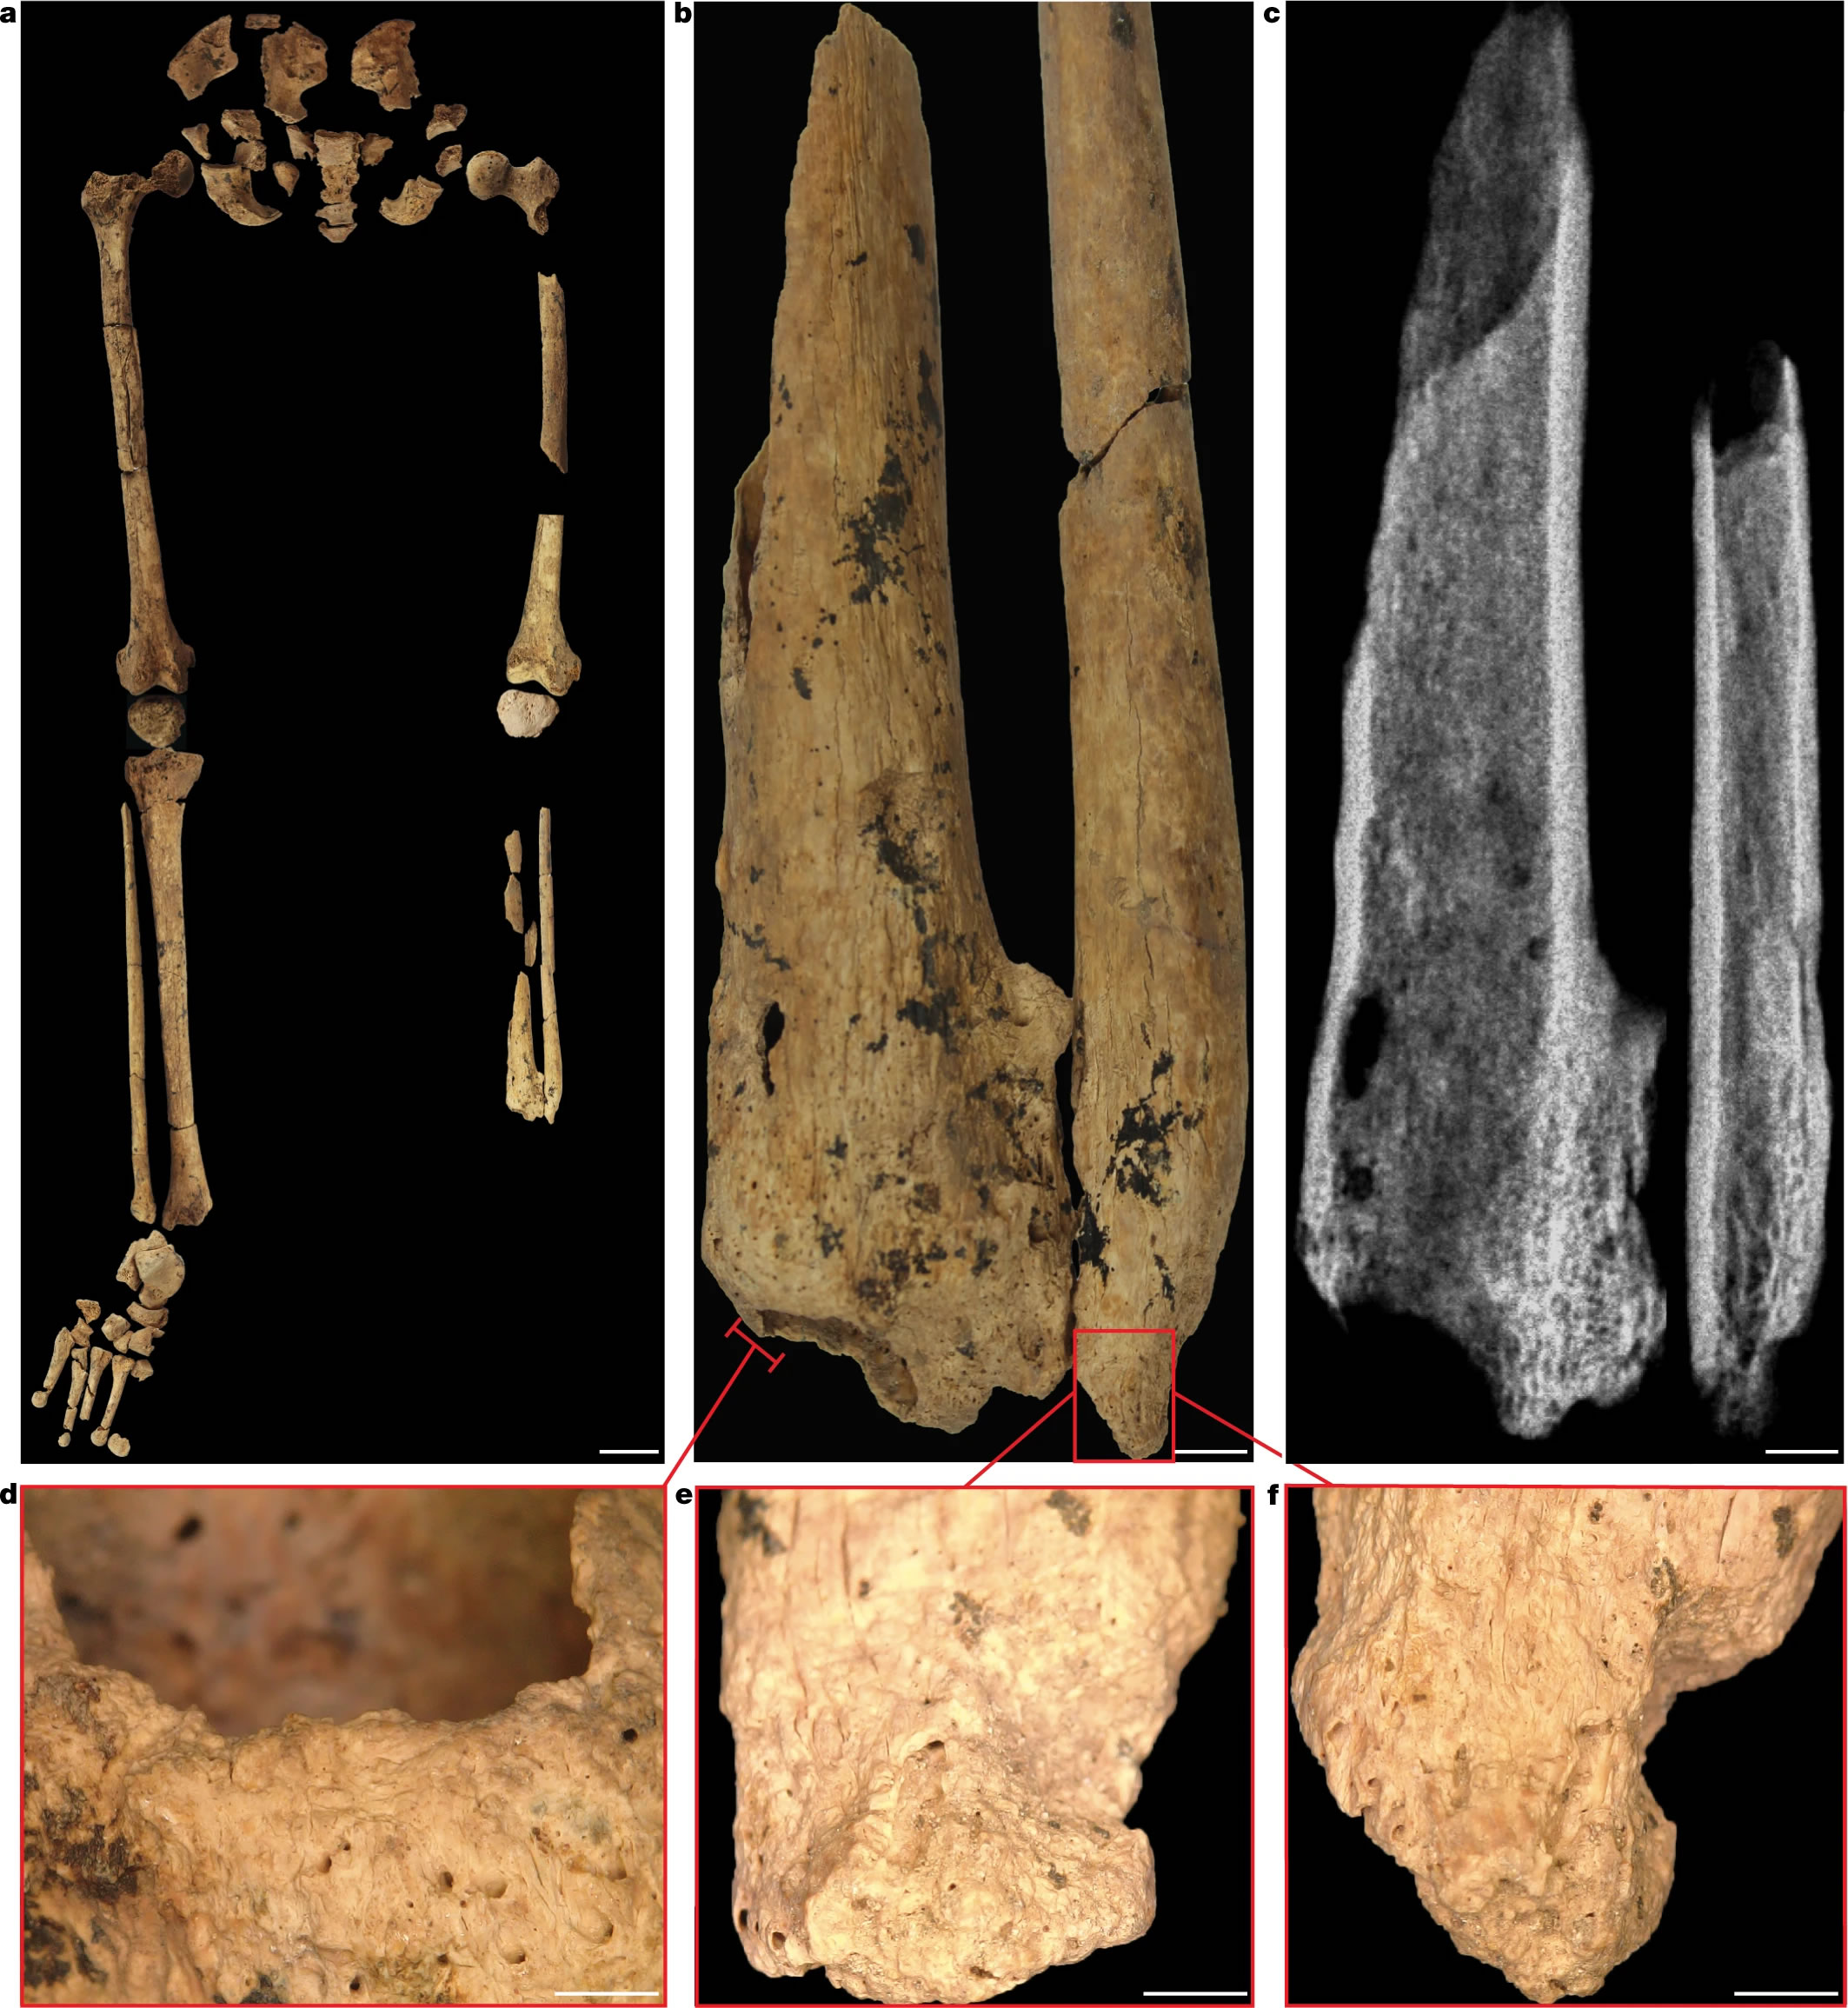 该个体孩童时左腿下部被截肢，但仍活到了刚刚成年的时候，事件发生在31000年前的婆罗洲。图片来源：Jose Garcia